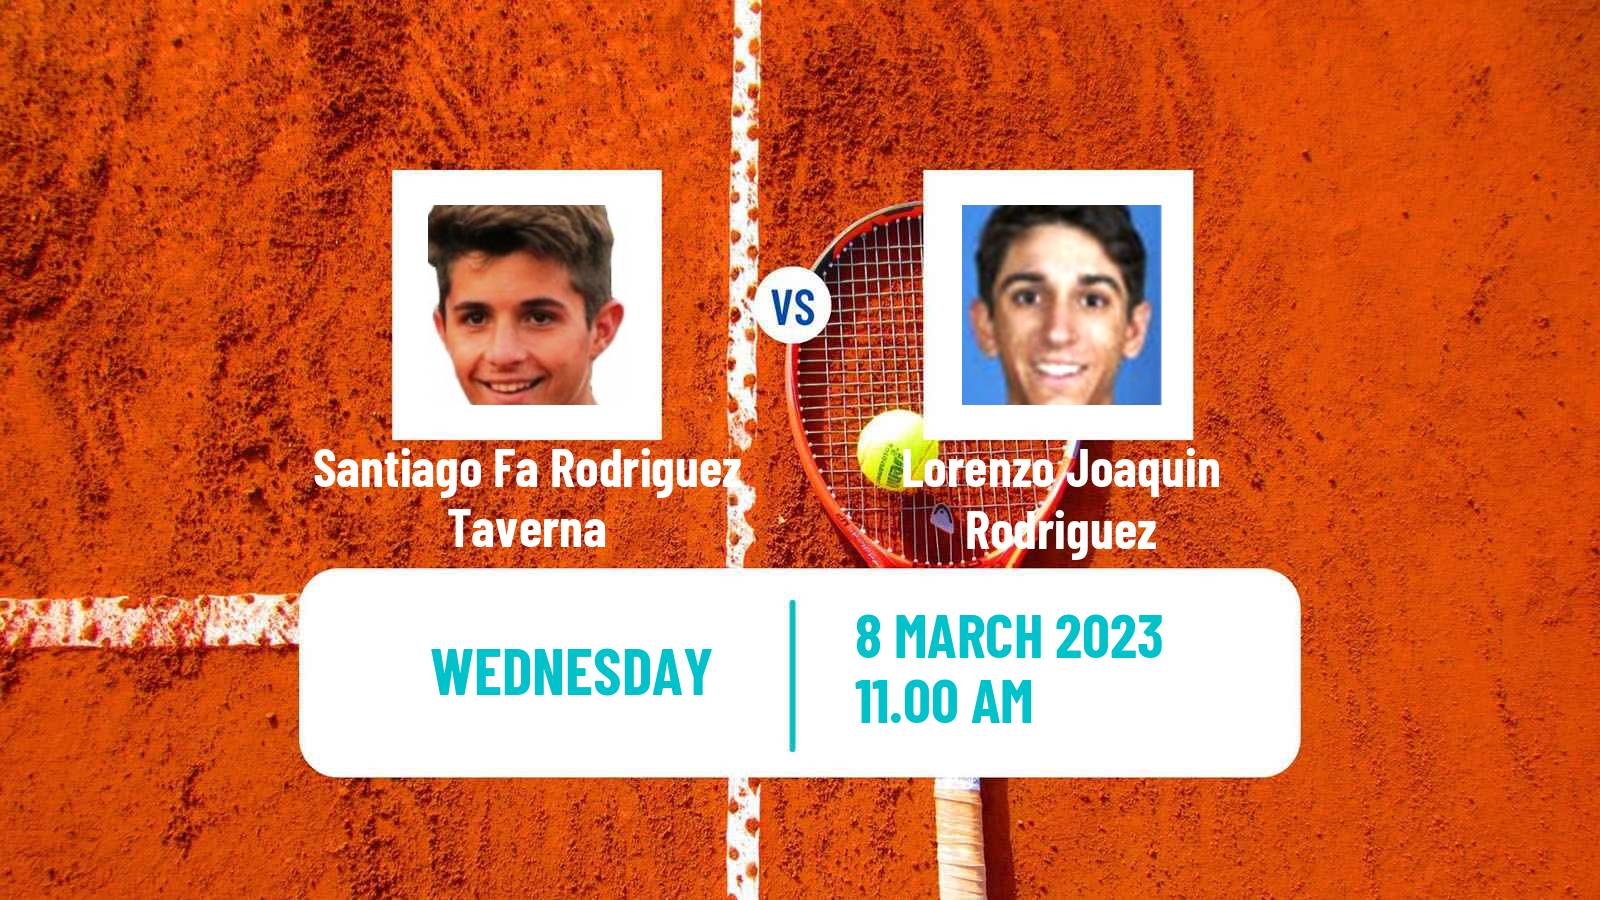 Tennis ITF Tournaments Santiago Fa Rodriguez Taverna - Lorenzo Joaquin Rodriguez